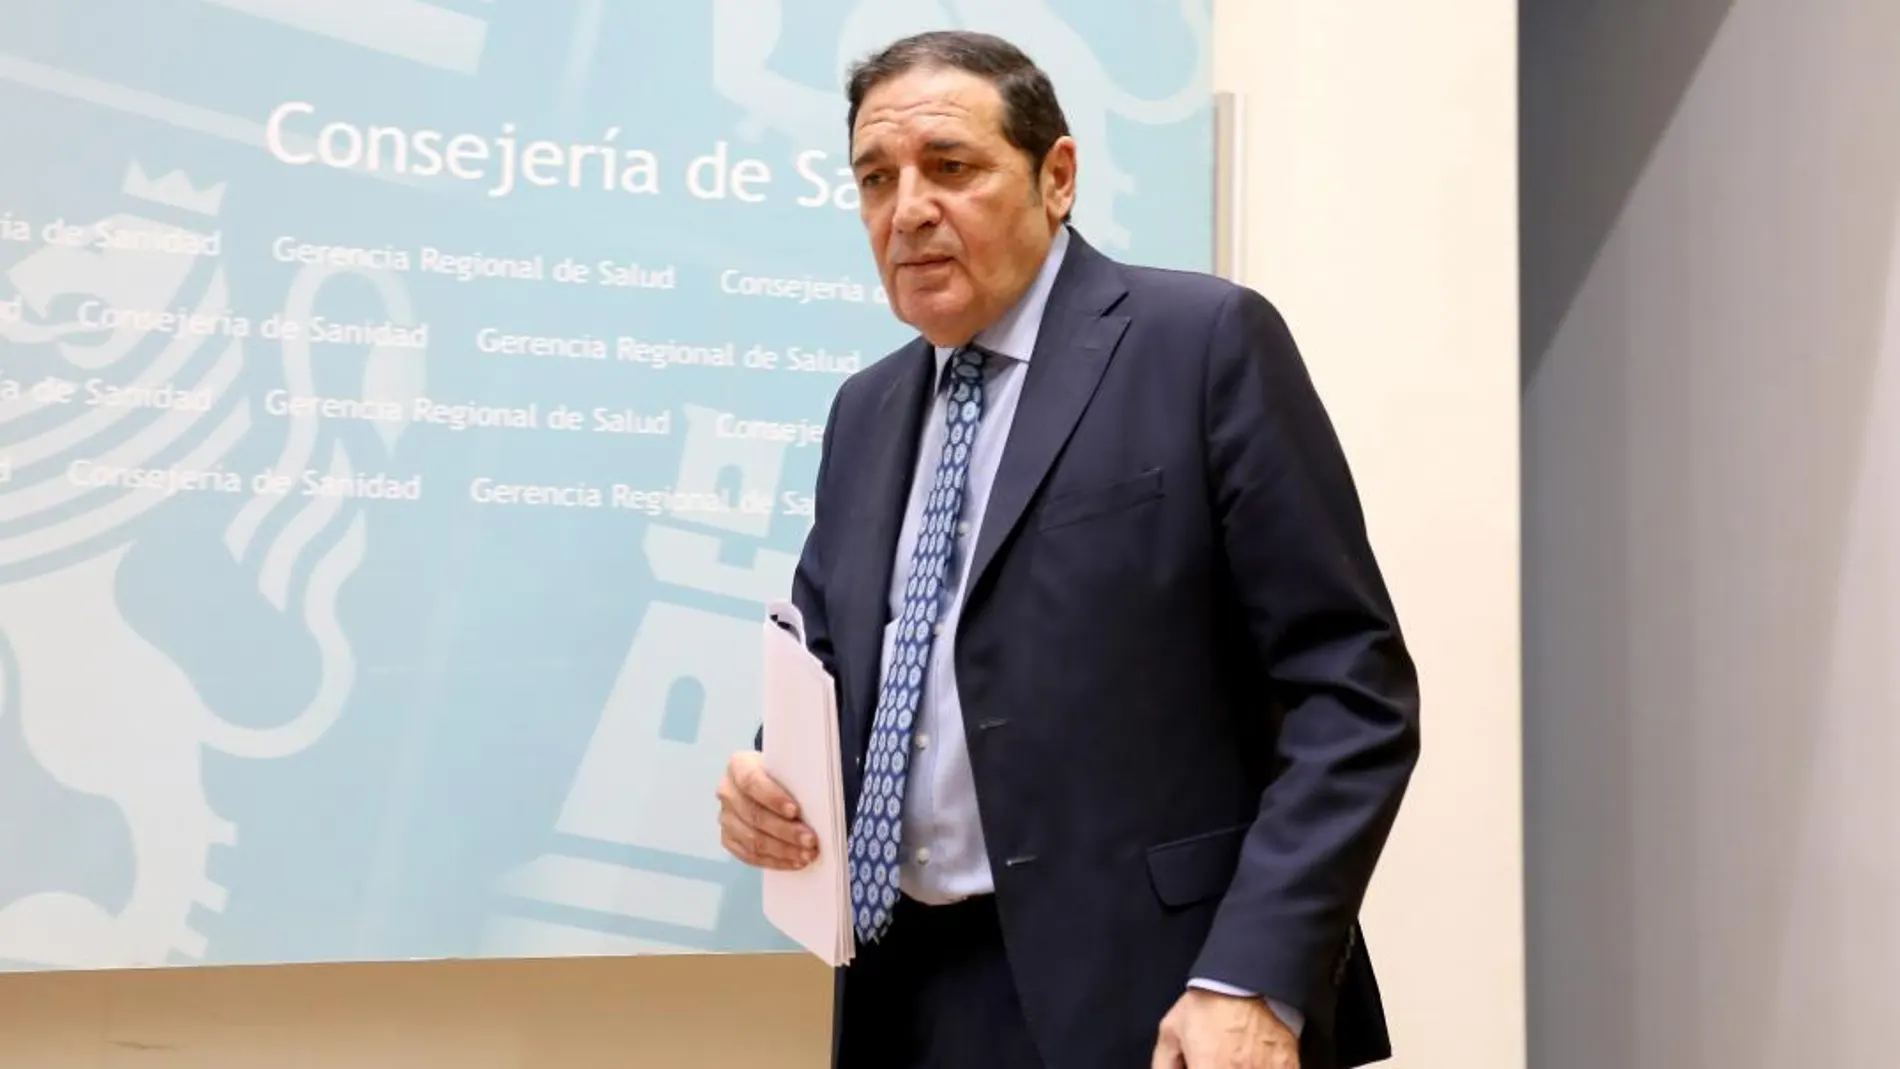 El consejero de Sanidad, Antonio Sáez Aguado, reprocha a la oposición se «visión catastrofista» de la Sanidad